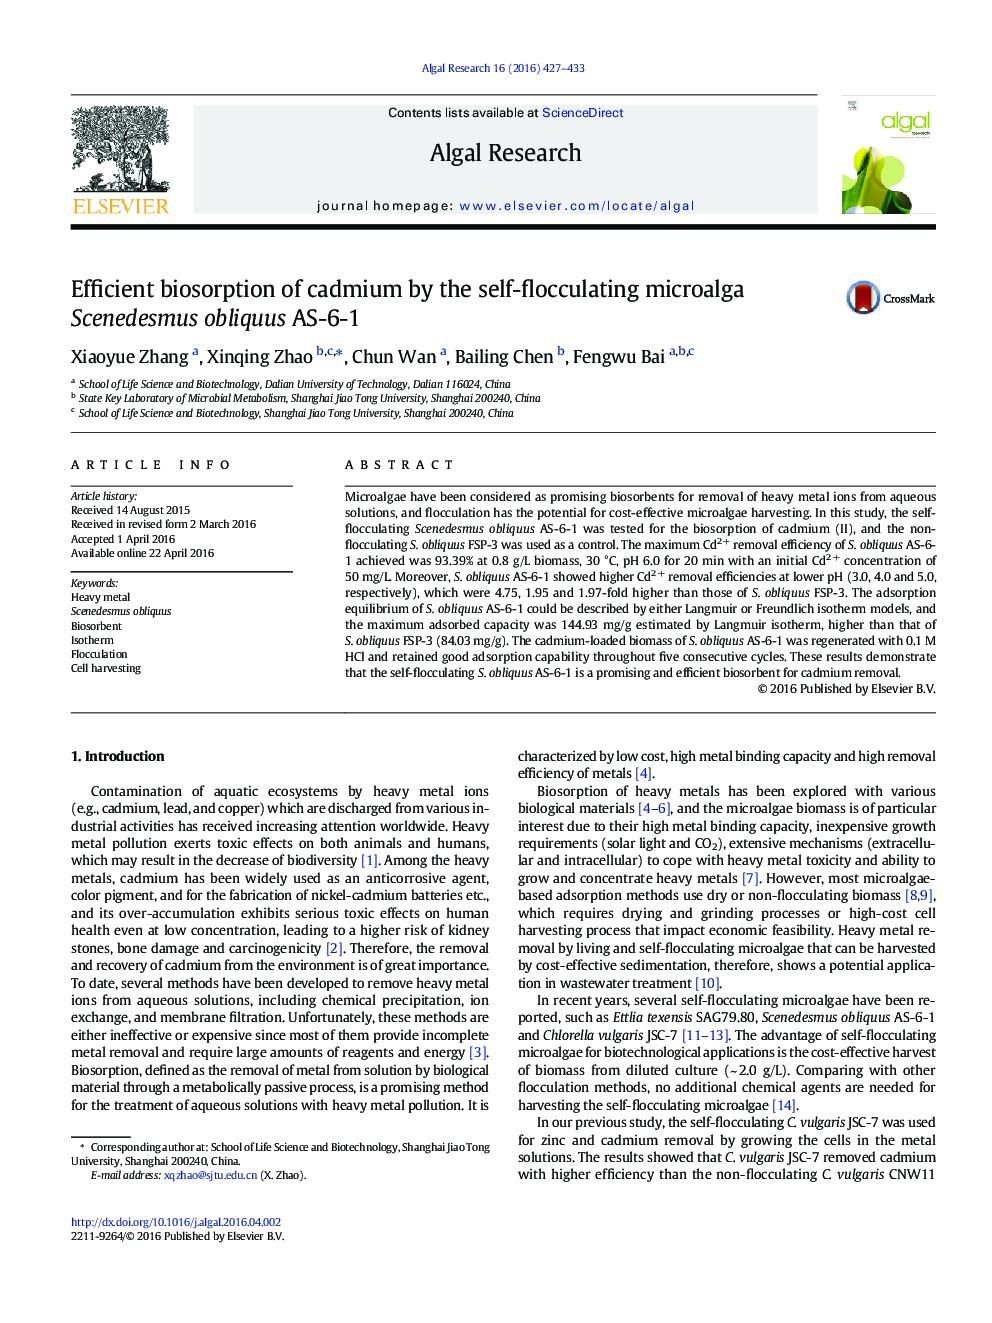 Efficient biosorption of cadmium by the self-flocculating microalga Scenedesmus obliquus AS-6-1